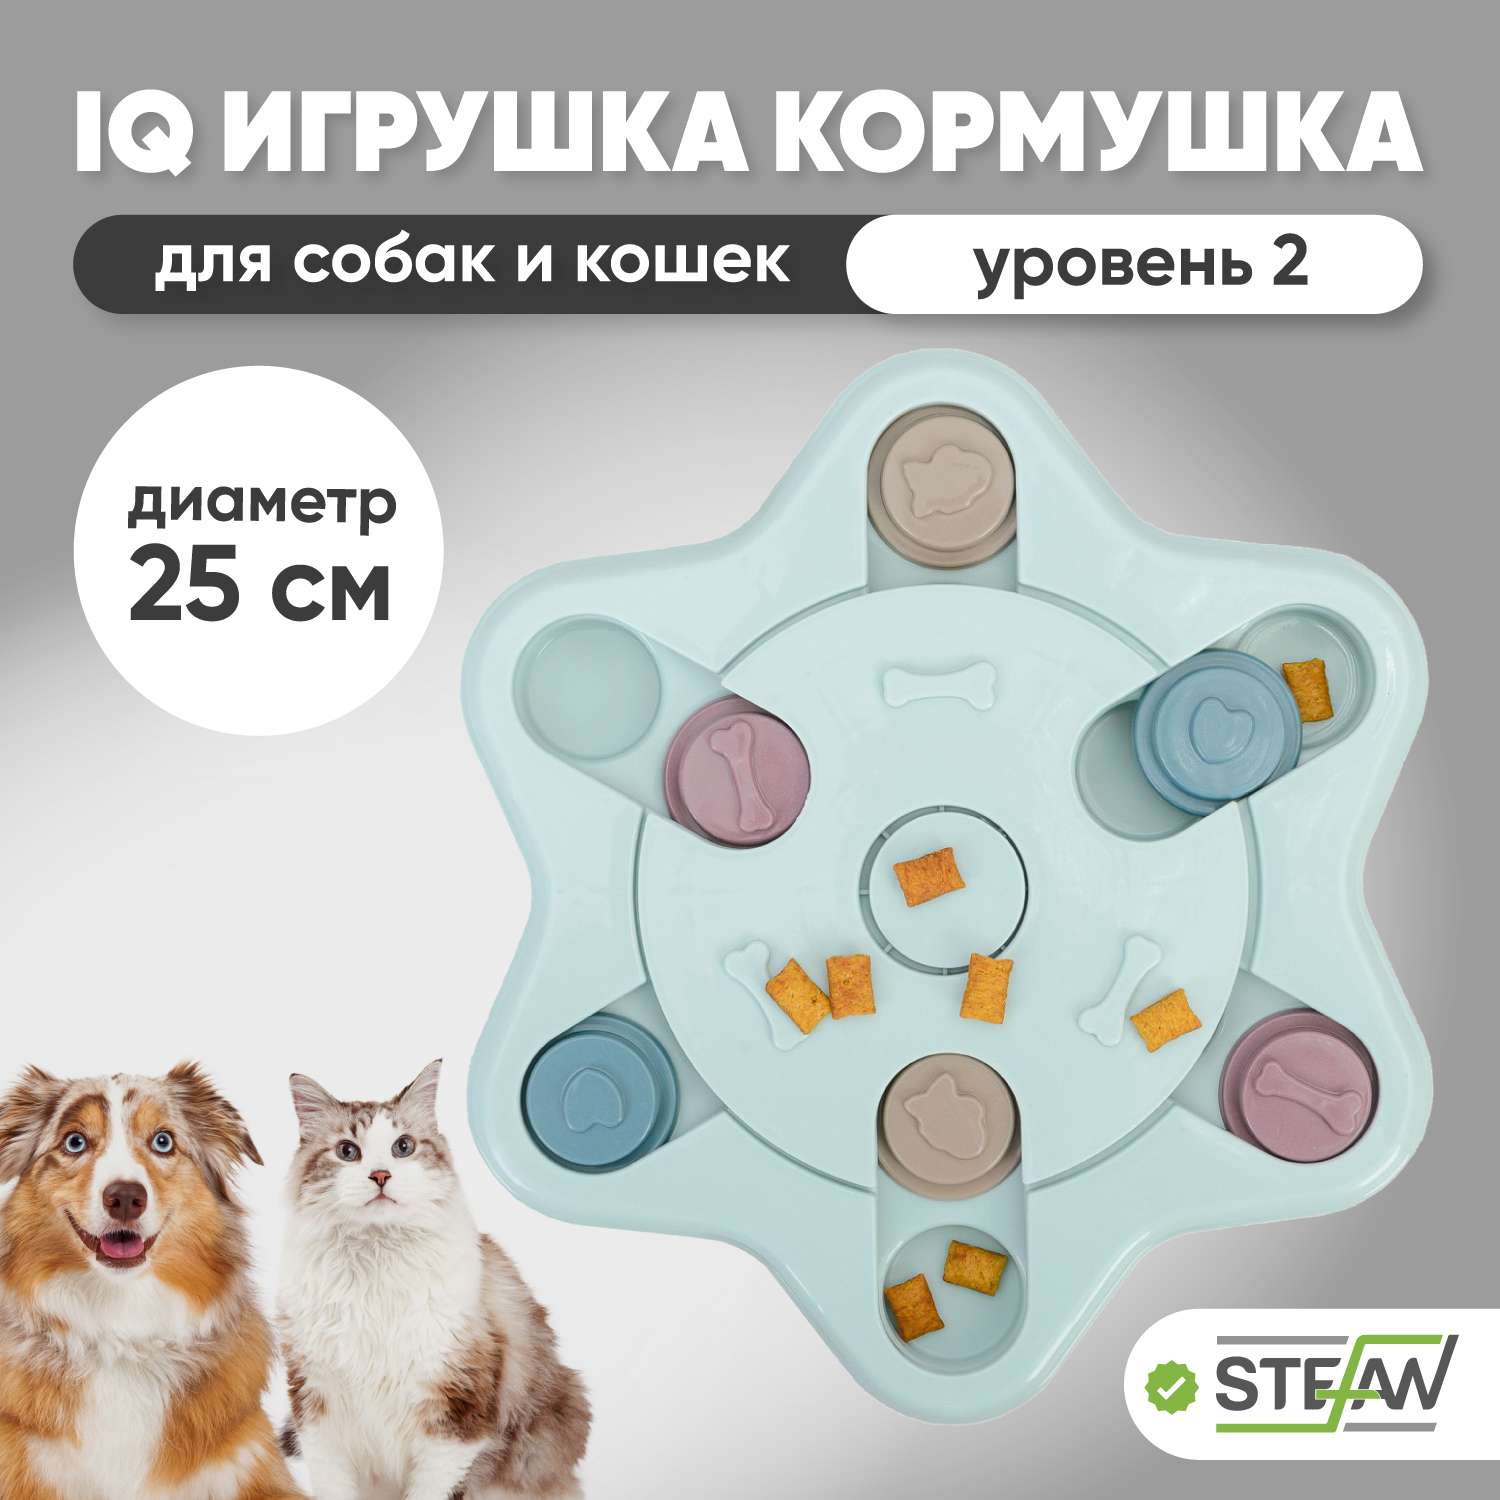 Игрушка для животных Stefan интерактивная развивающая головоломка IQ синяя - фото 1